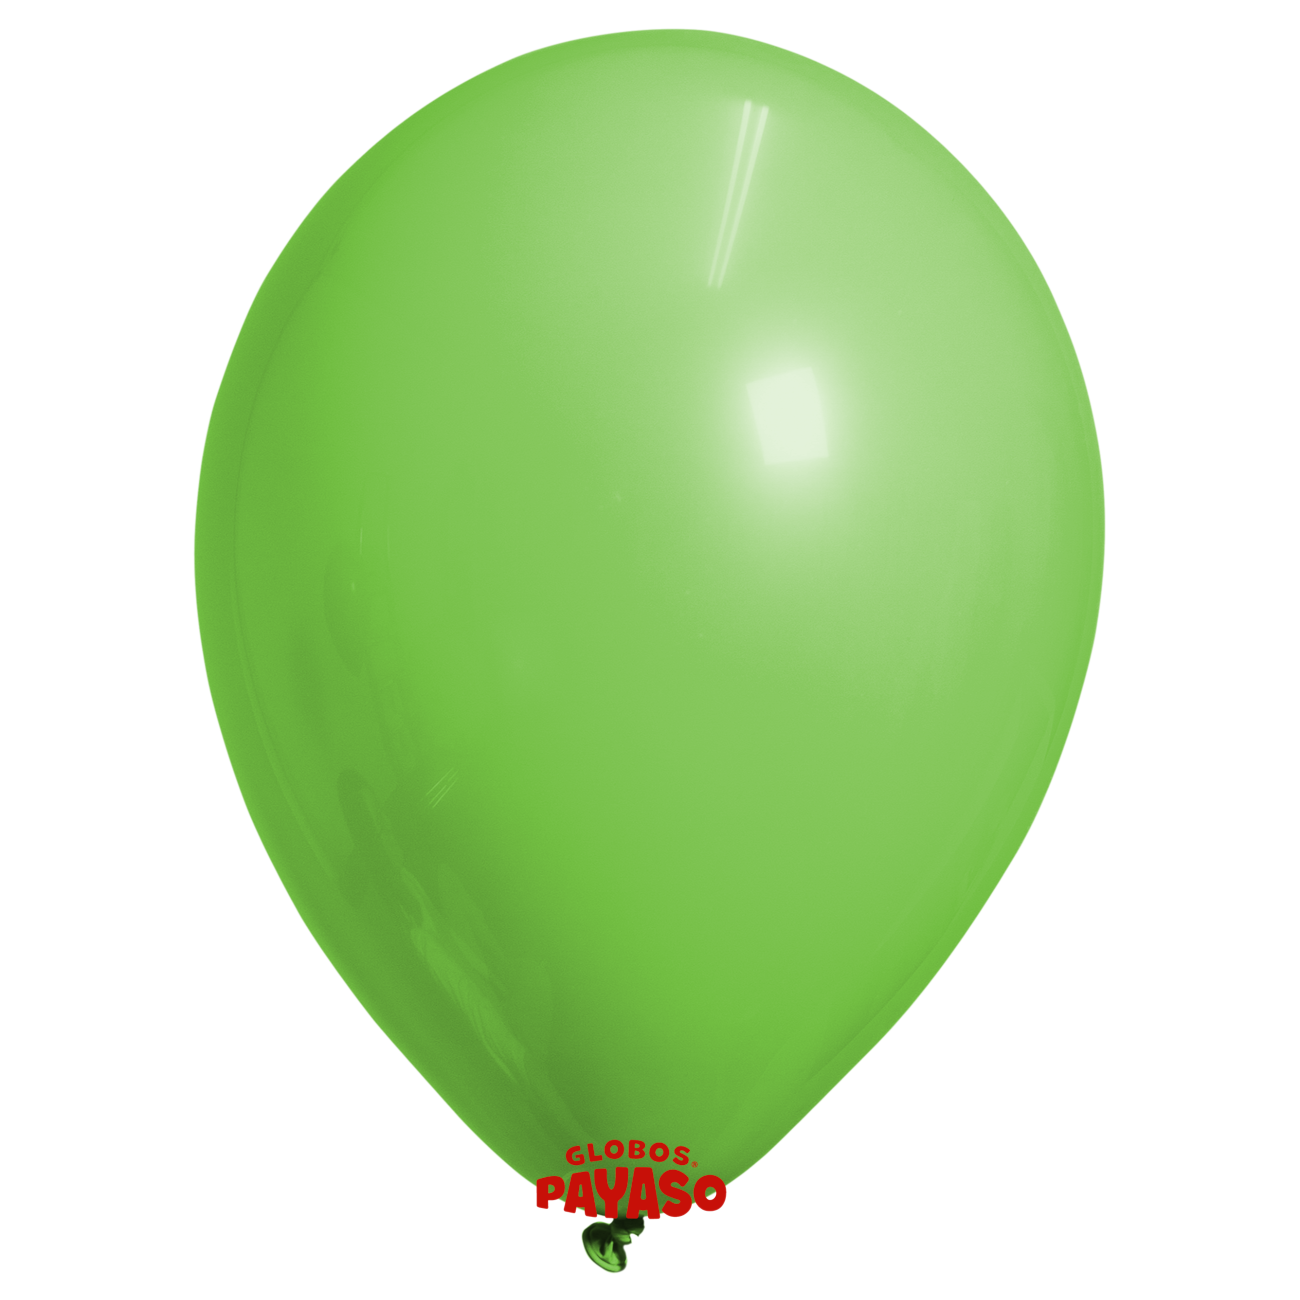 Globos Payaso / Unique 5" Vert Lime Decorator Balloon